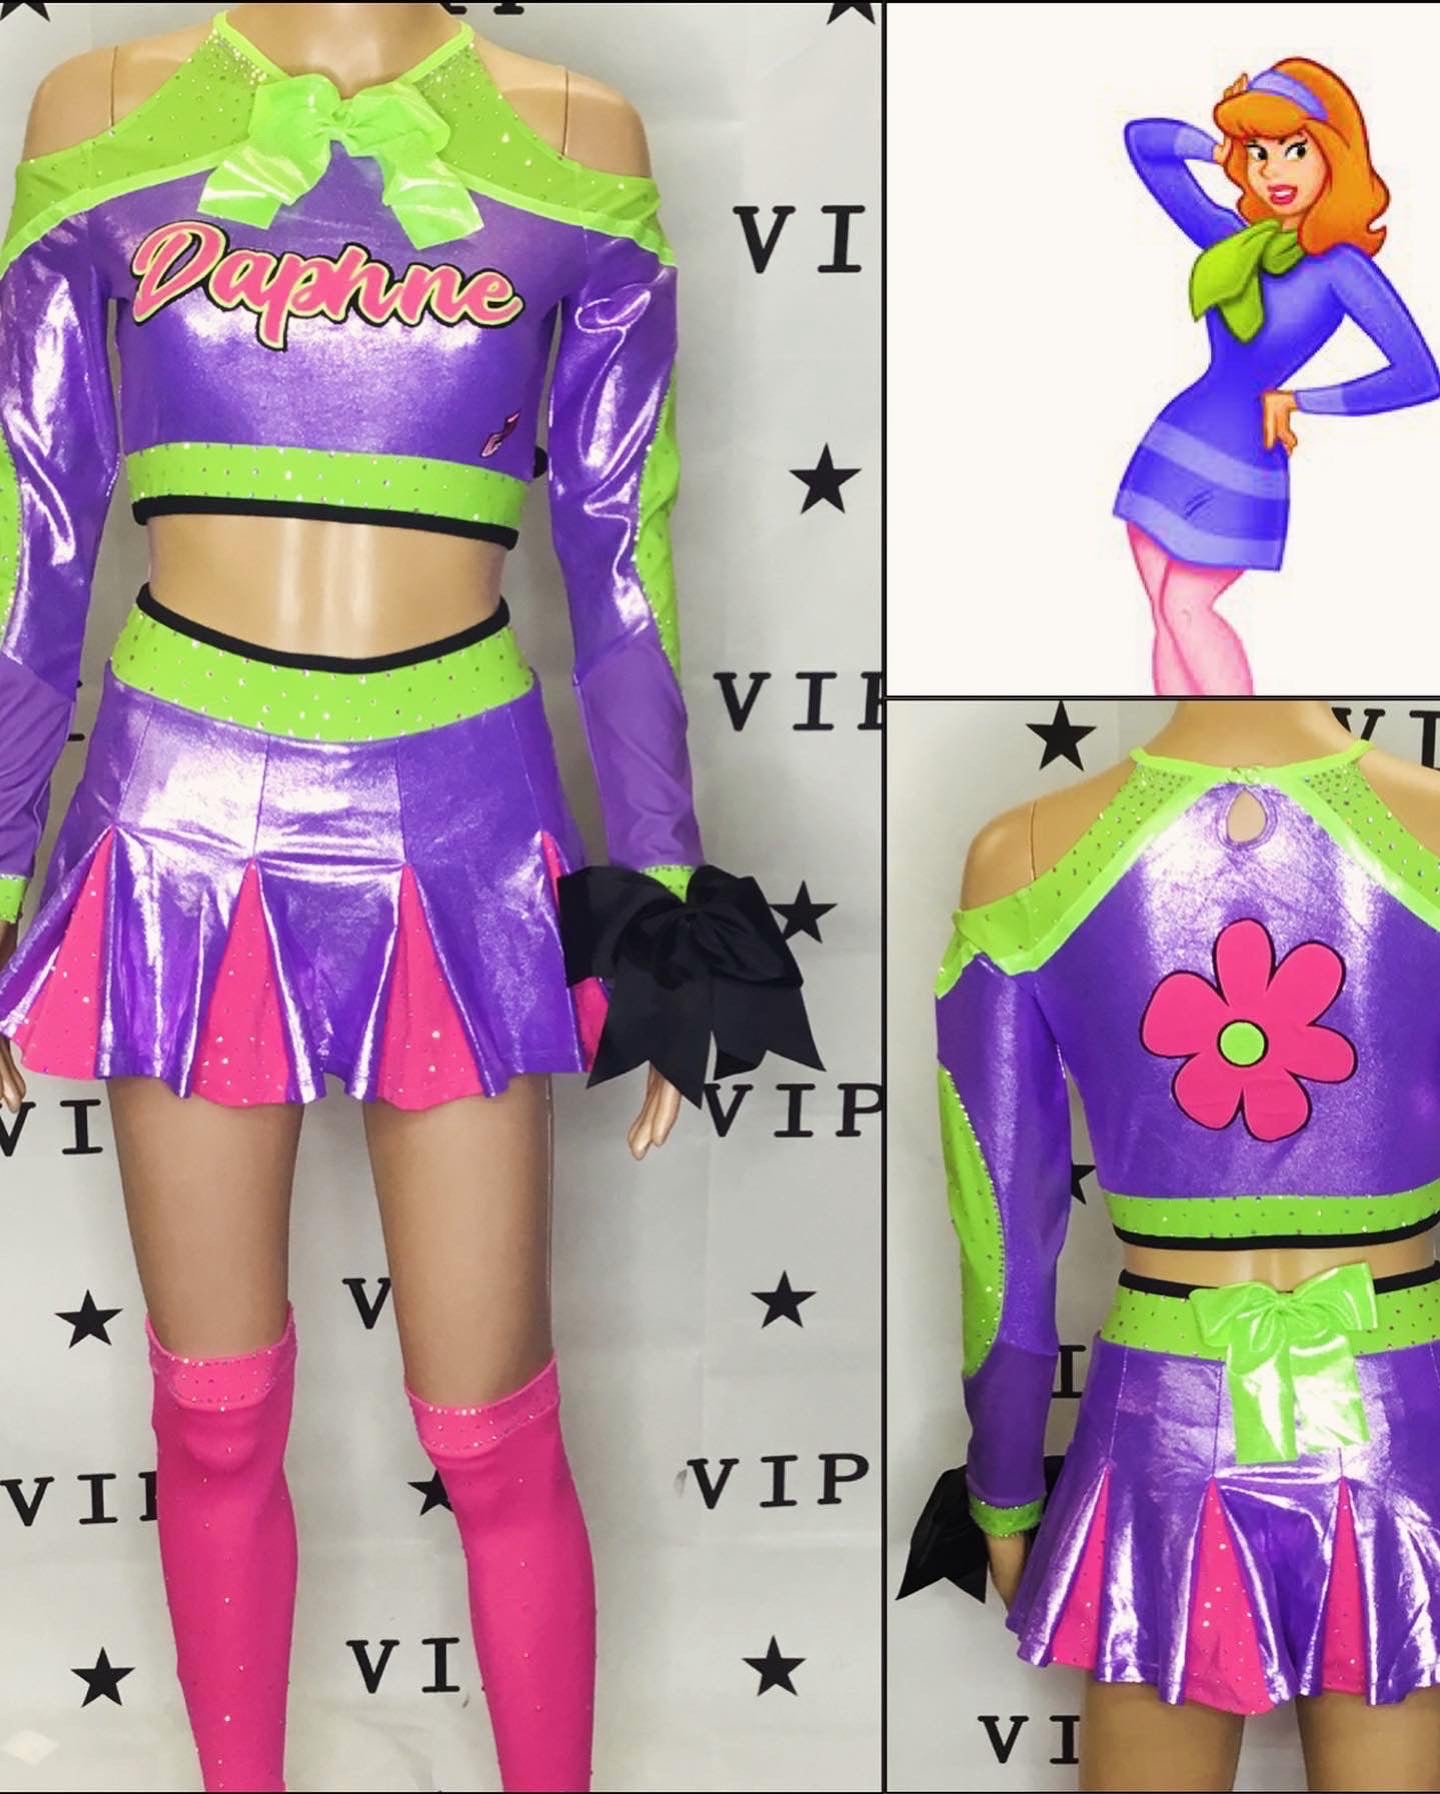 Daphne scooby doo cheer inspired uniform